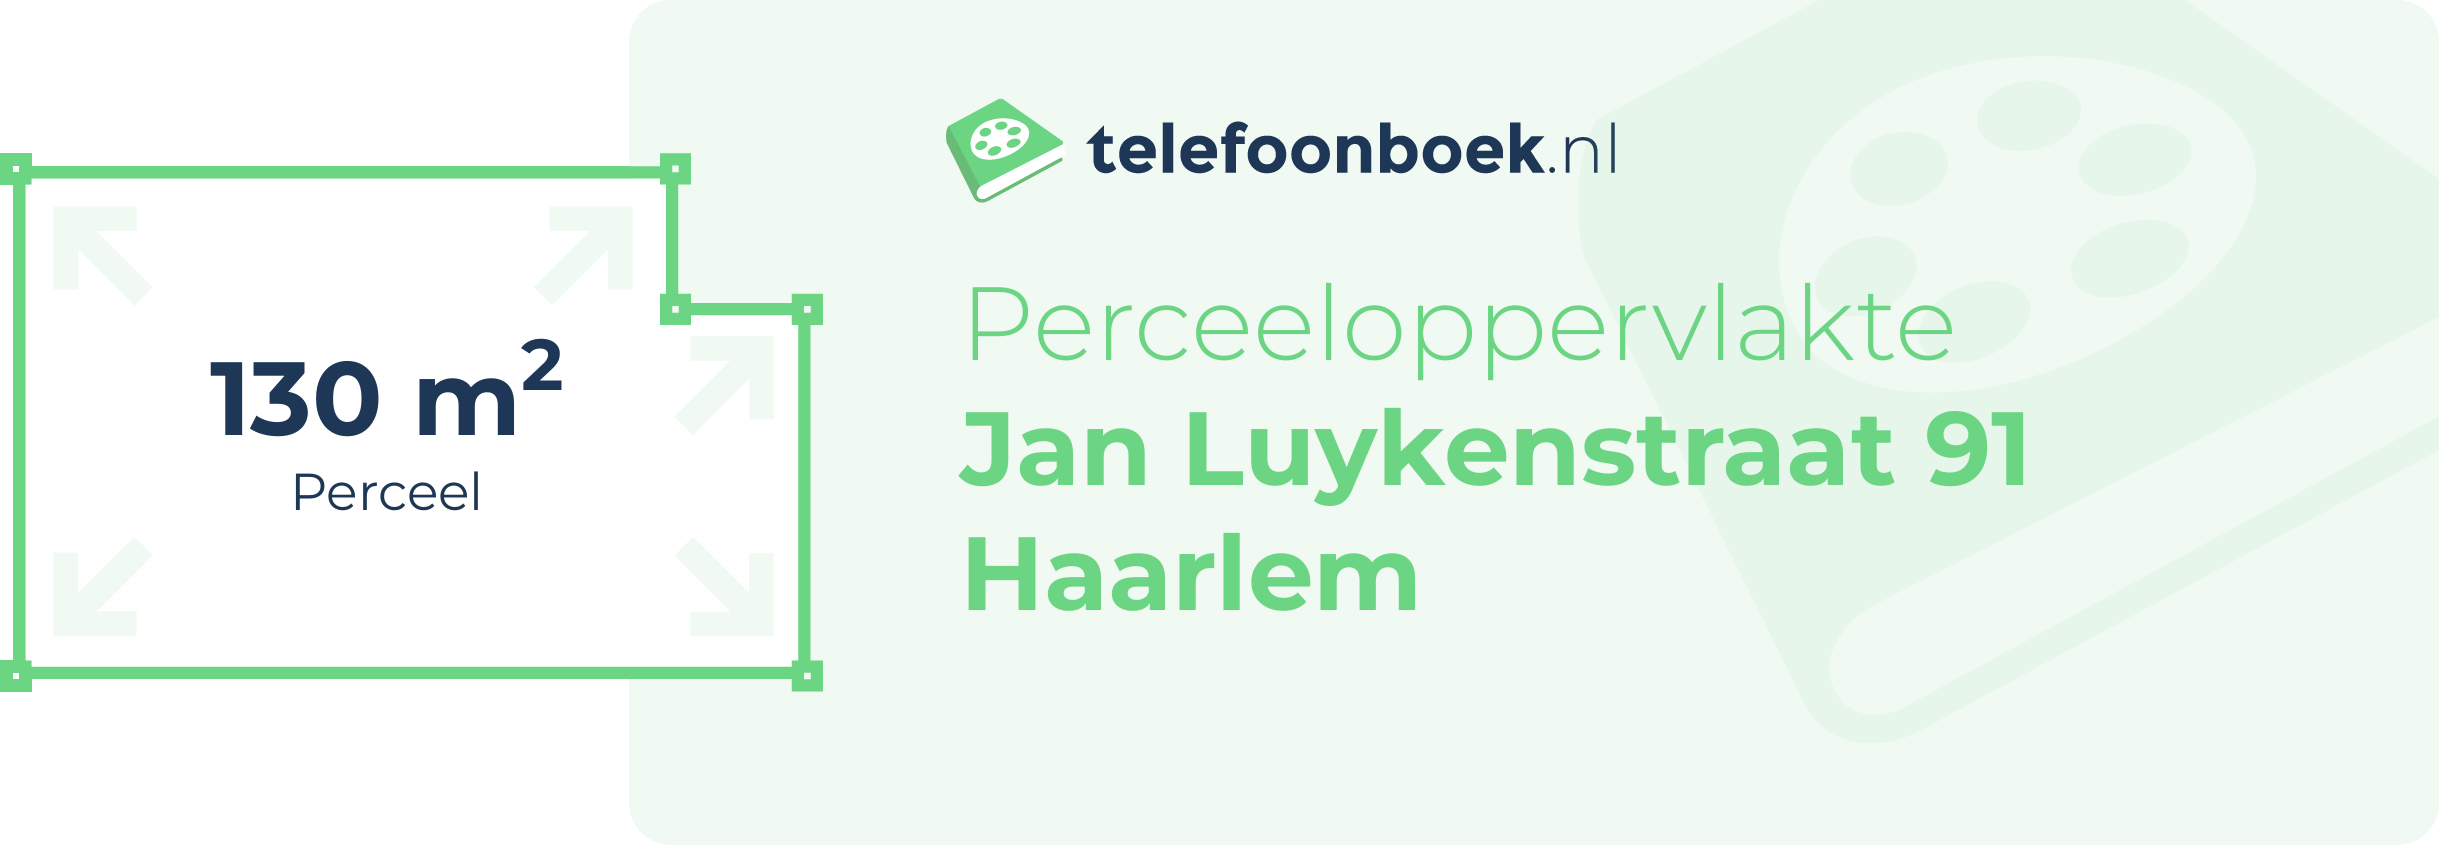 Perceeloppervlakte Jan Luykenstraat 91 Haarlem